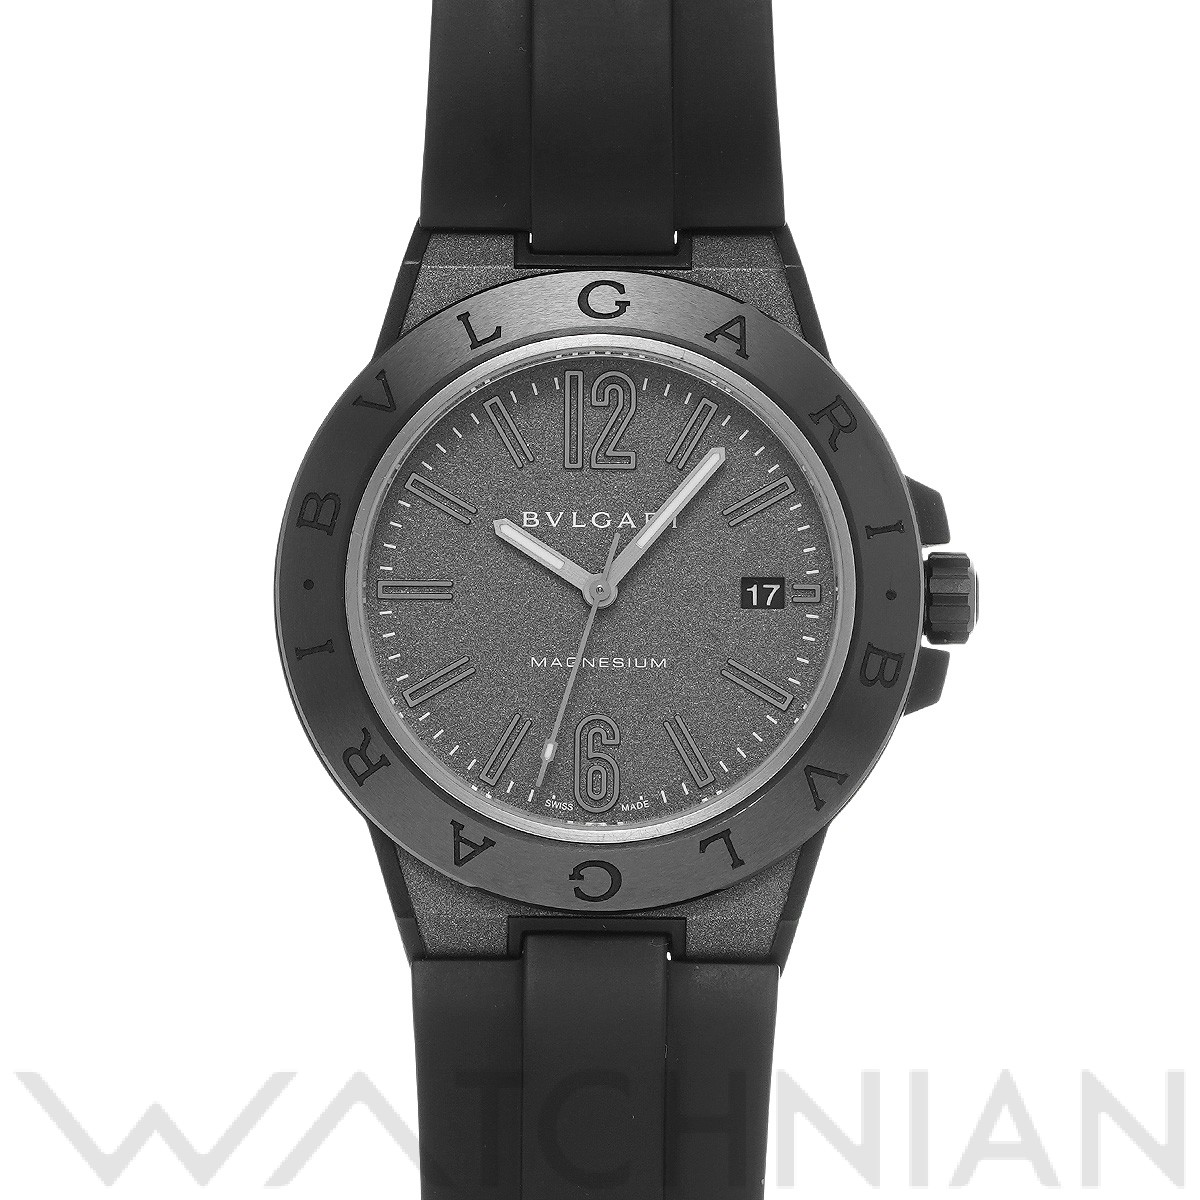 ブルガリ / BVLGARI ディアゴノ マグネシウム DG41SMC グレー メンズ 時計 【中古】【wristwatch】